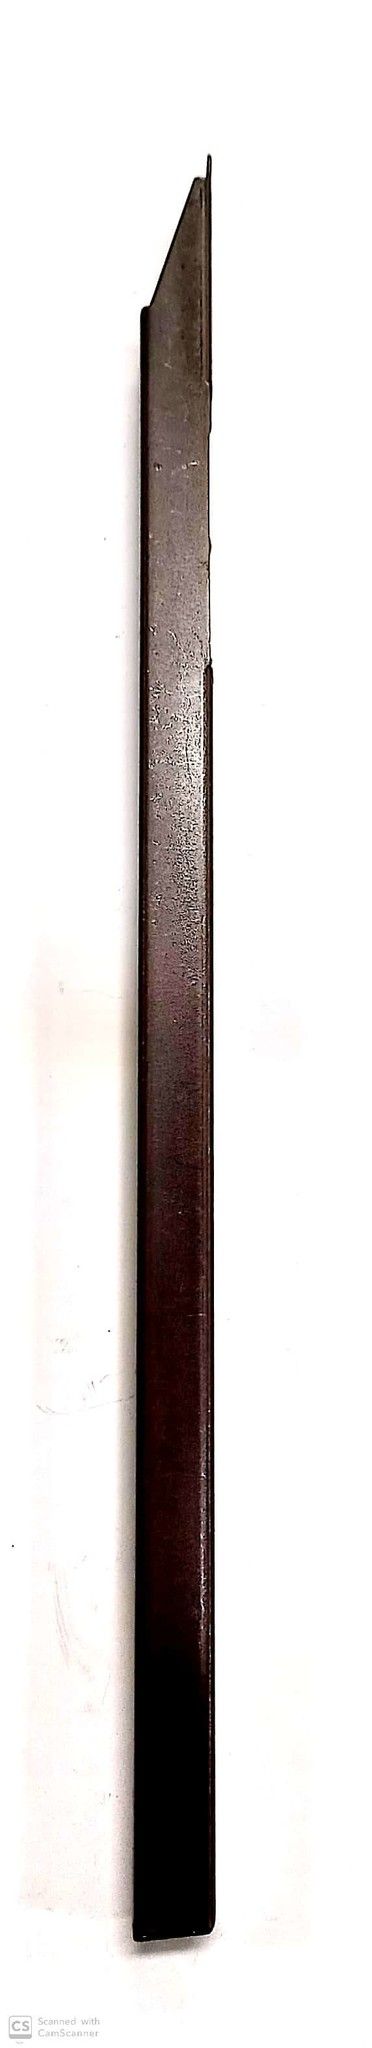 Catenaccio a pulsante cm 30 in ferro bronzato AGB 310